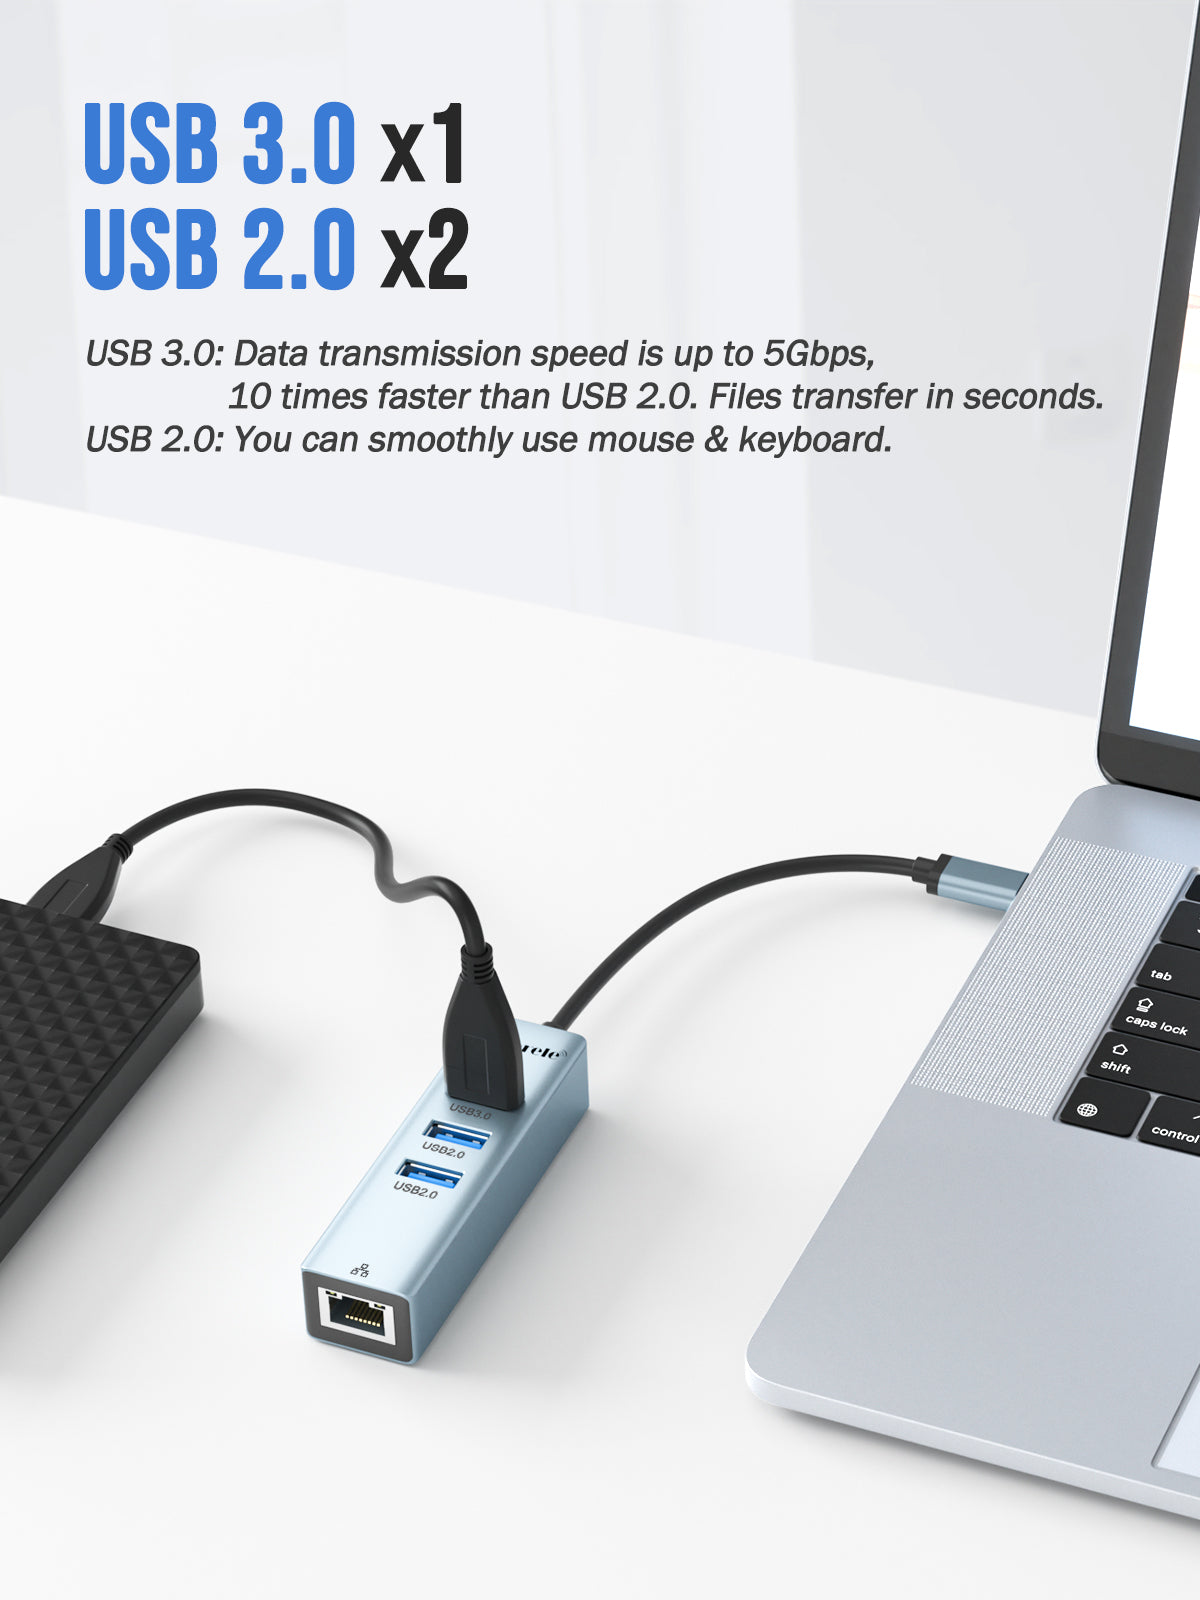 Adattatore Lemorele da USB C a Ethernet 4 in 1【#TC43】 